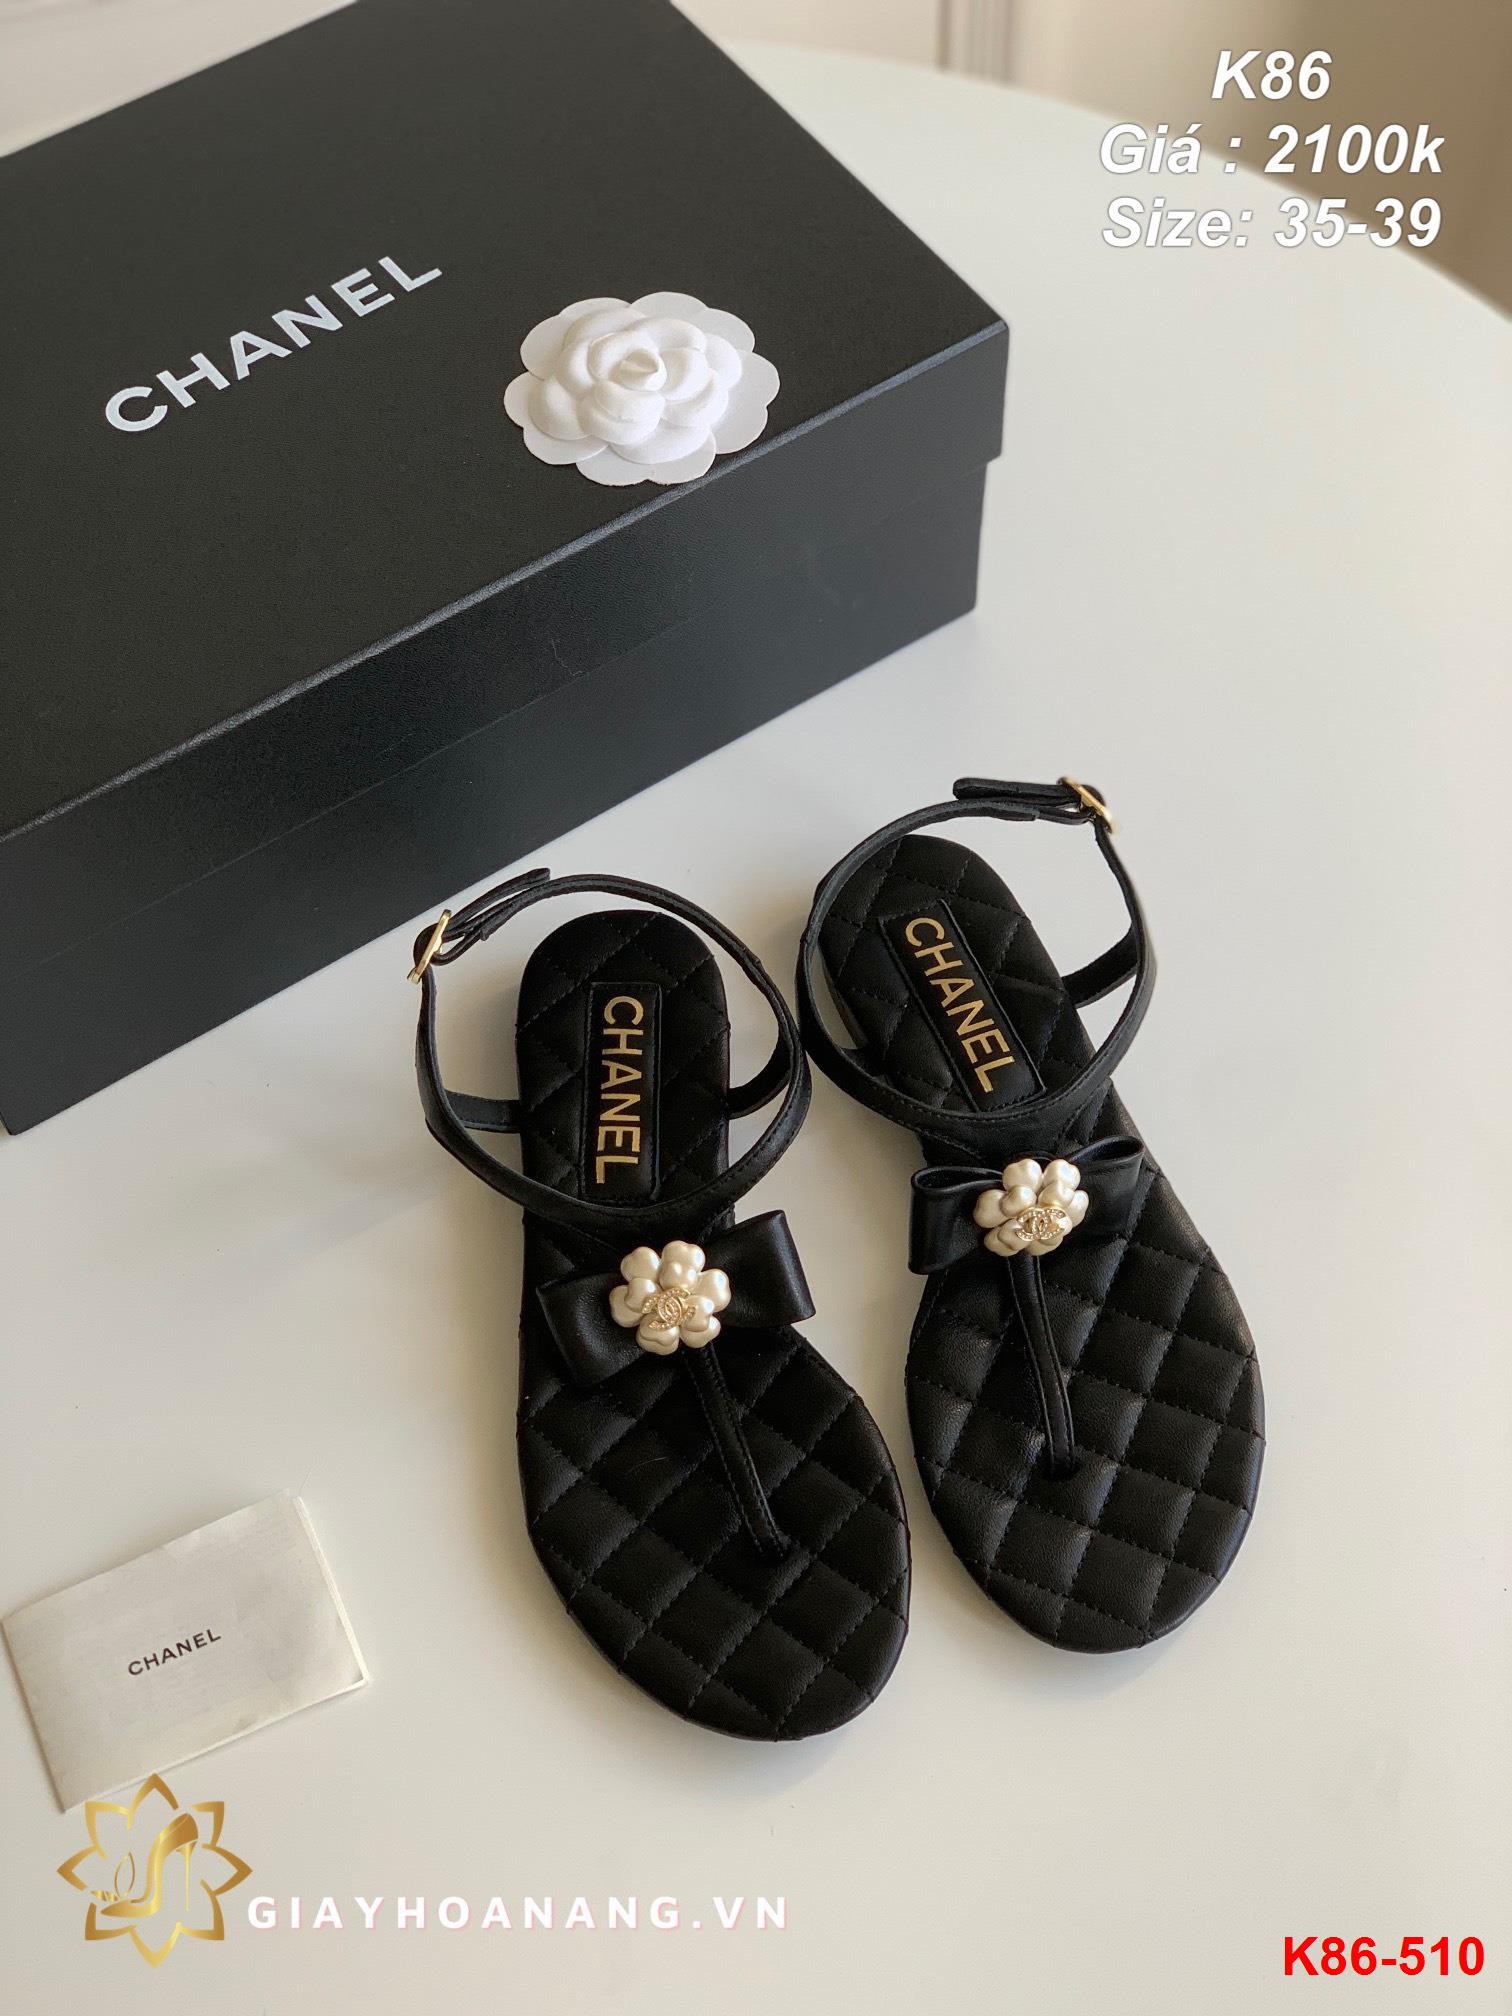 K86-510 Chanel sandal siêu cấp